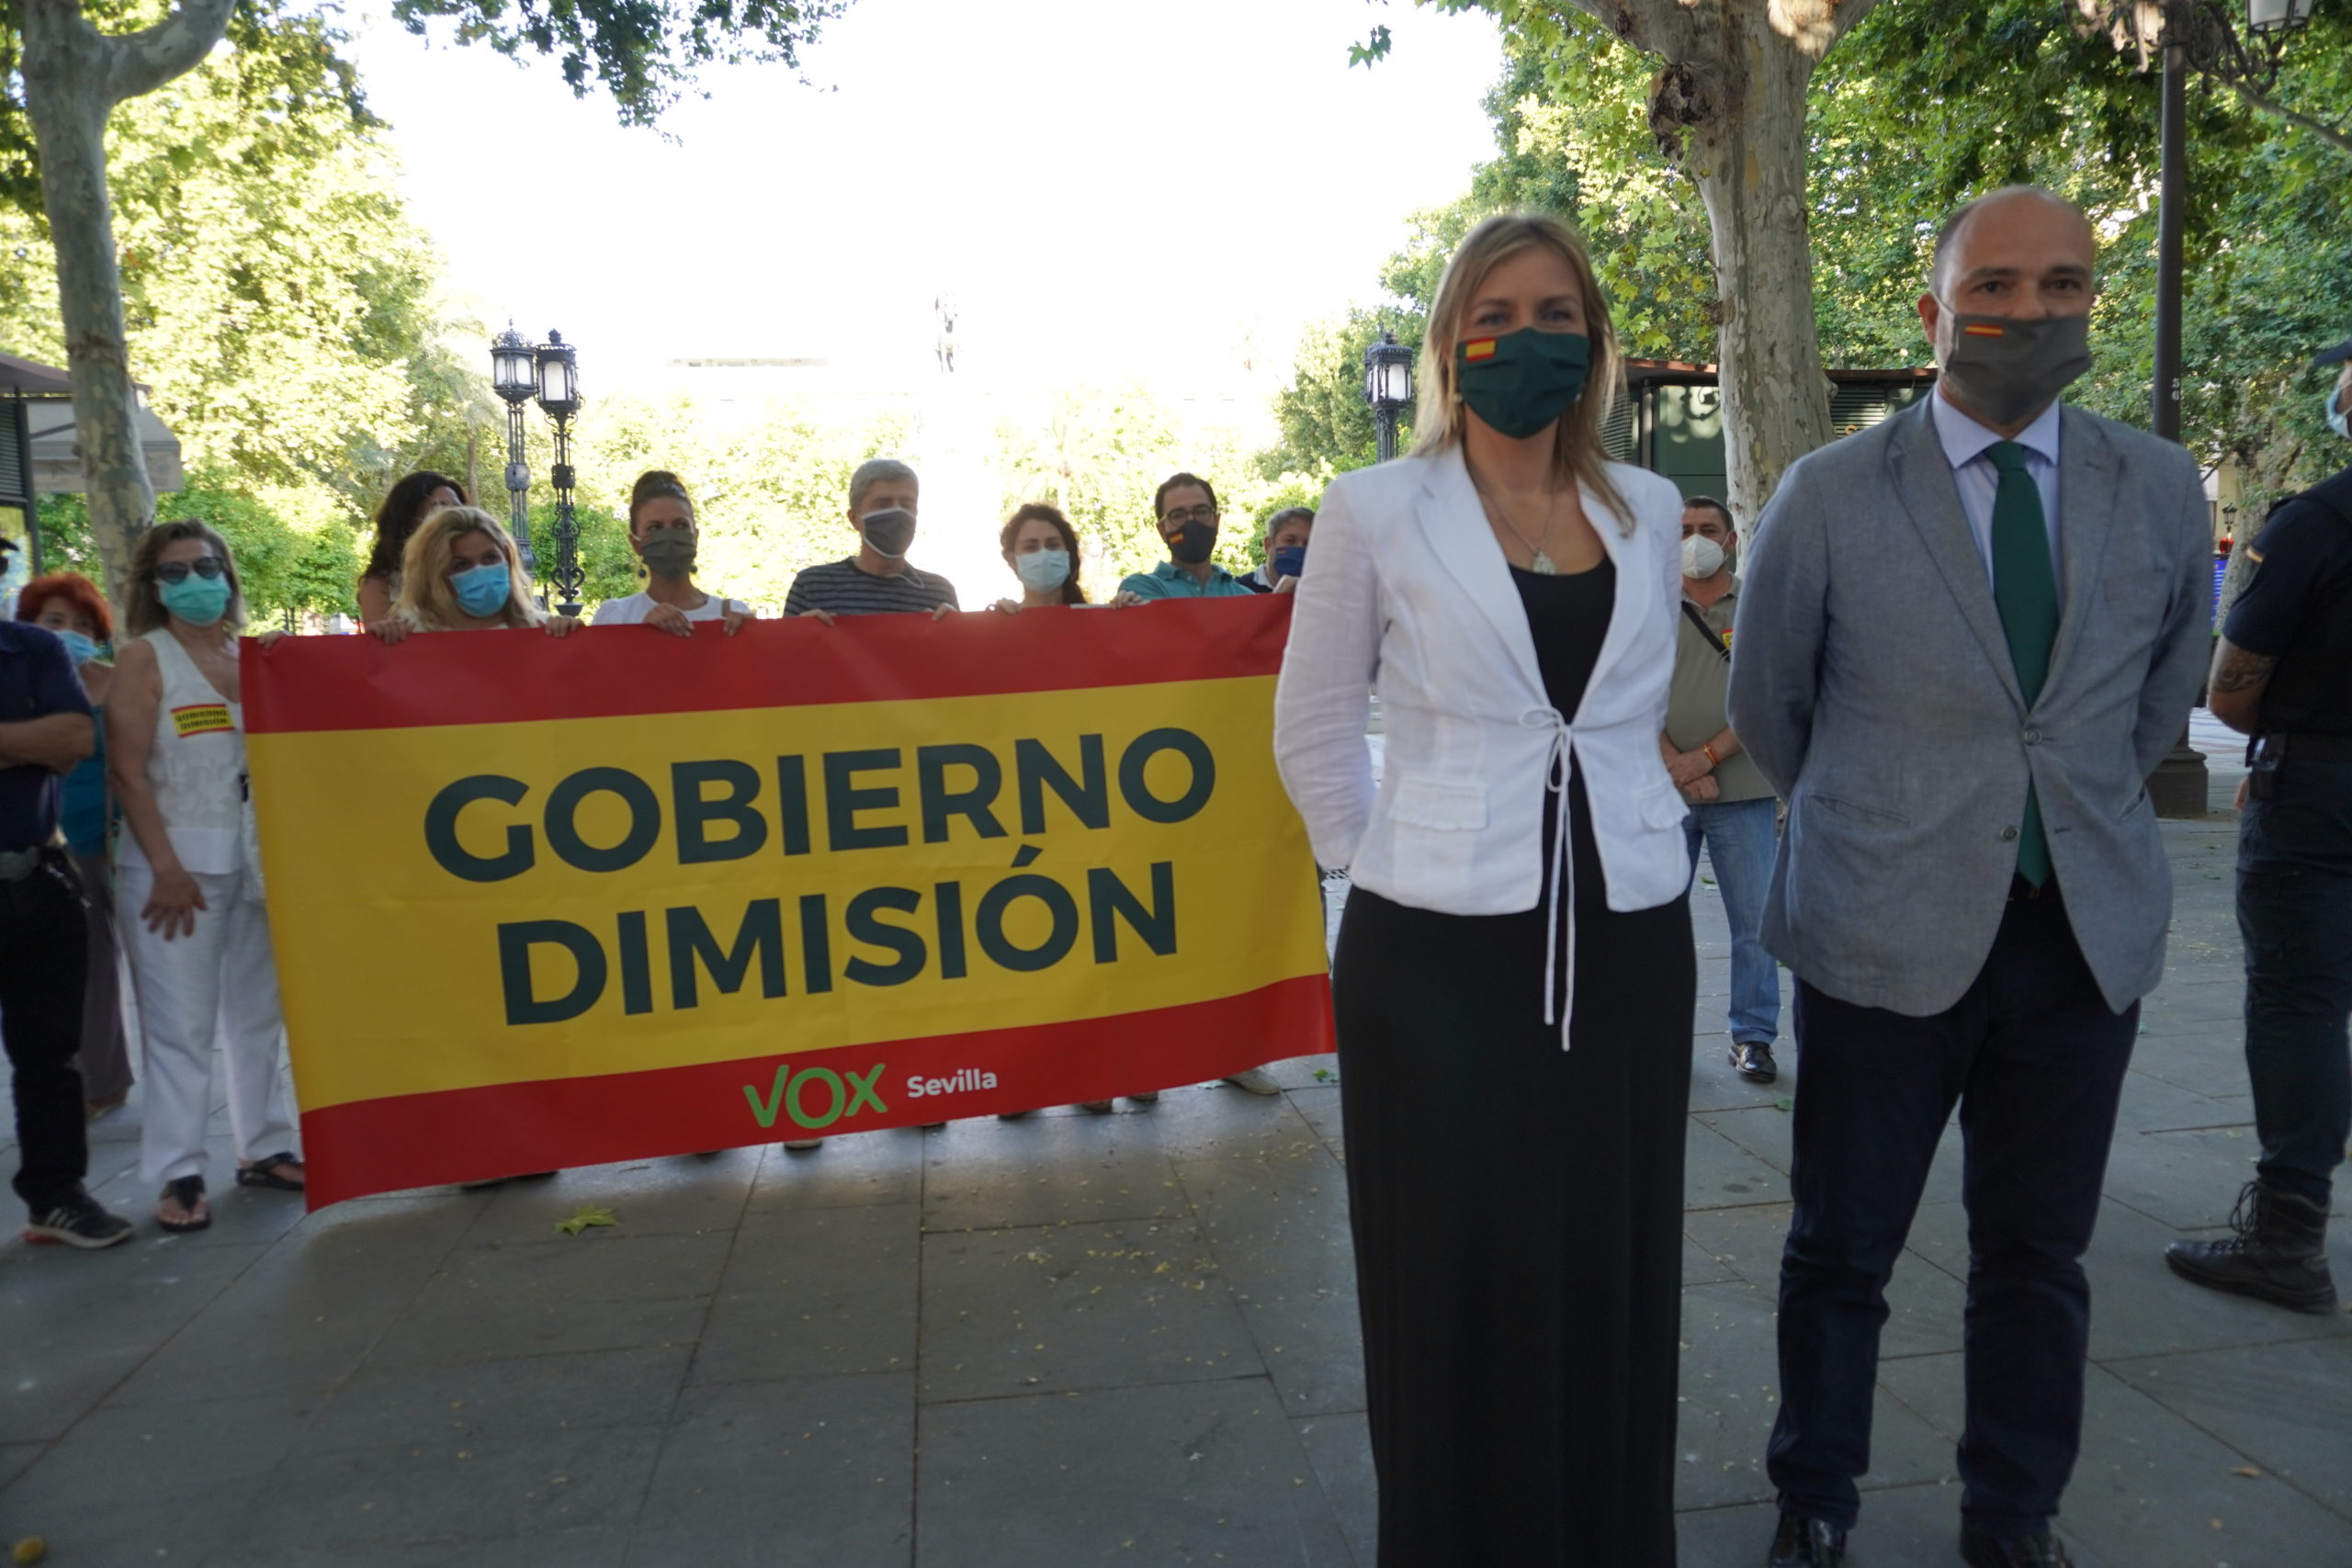 Afiliados VOX Sevilla piden dimisión del Gobierno a la llegada de Carmen calvo al Ayuntamiento de Sevilla